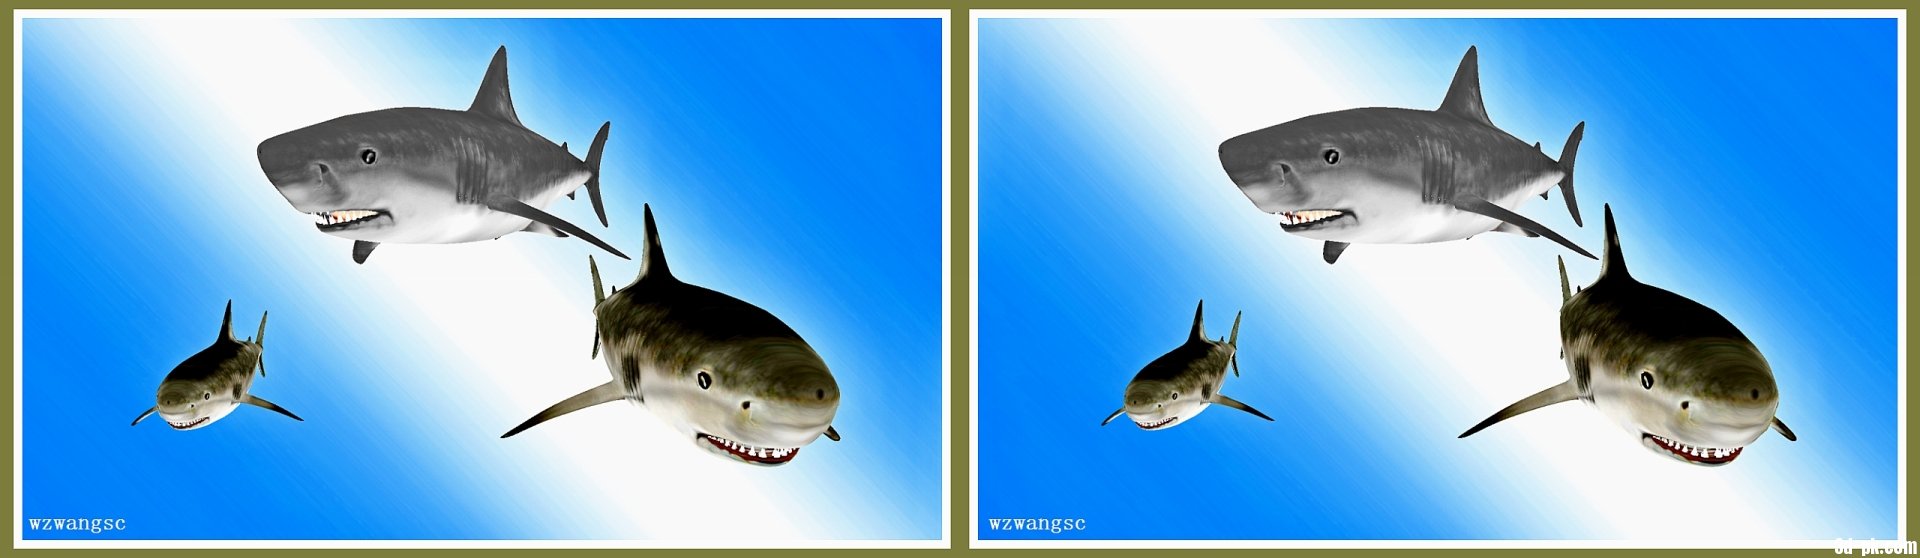 鲨鱼01_P.jpg